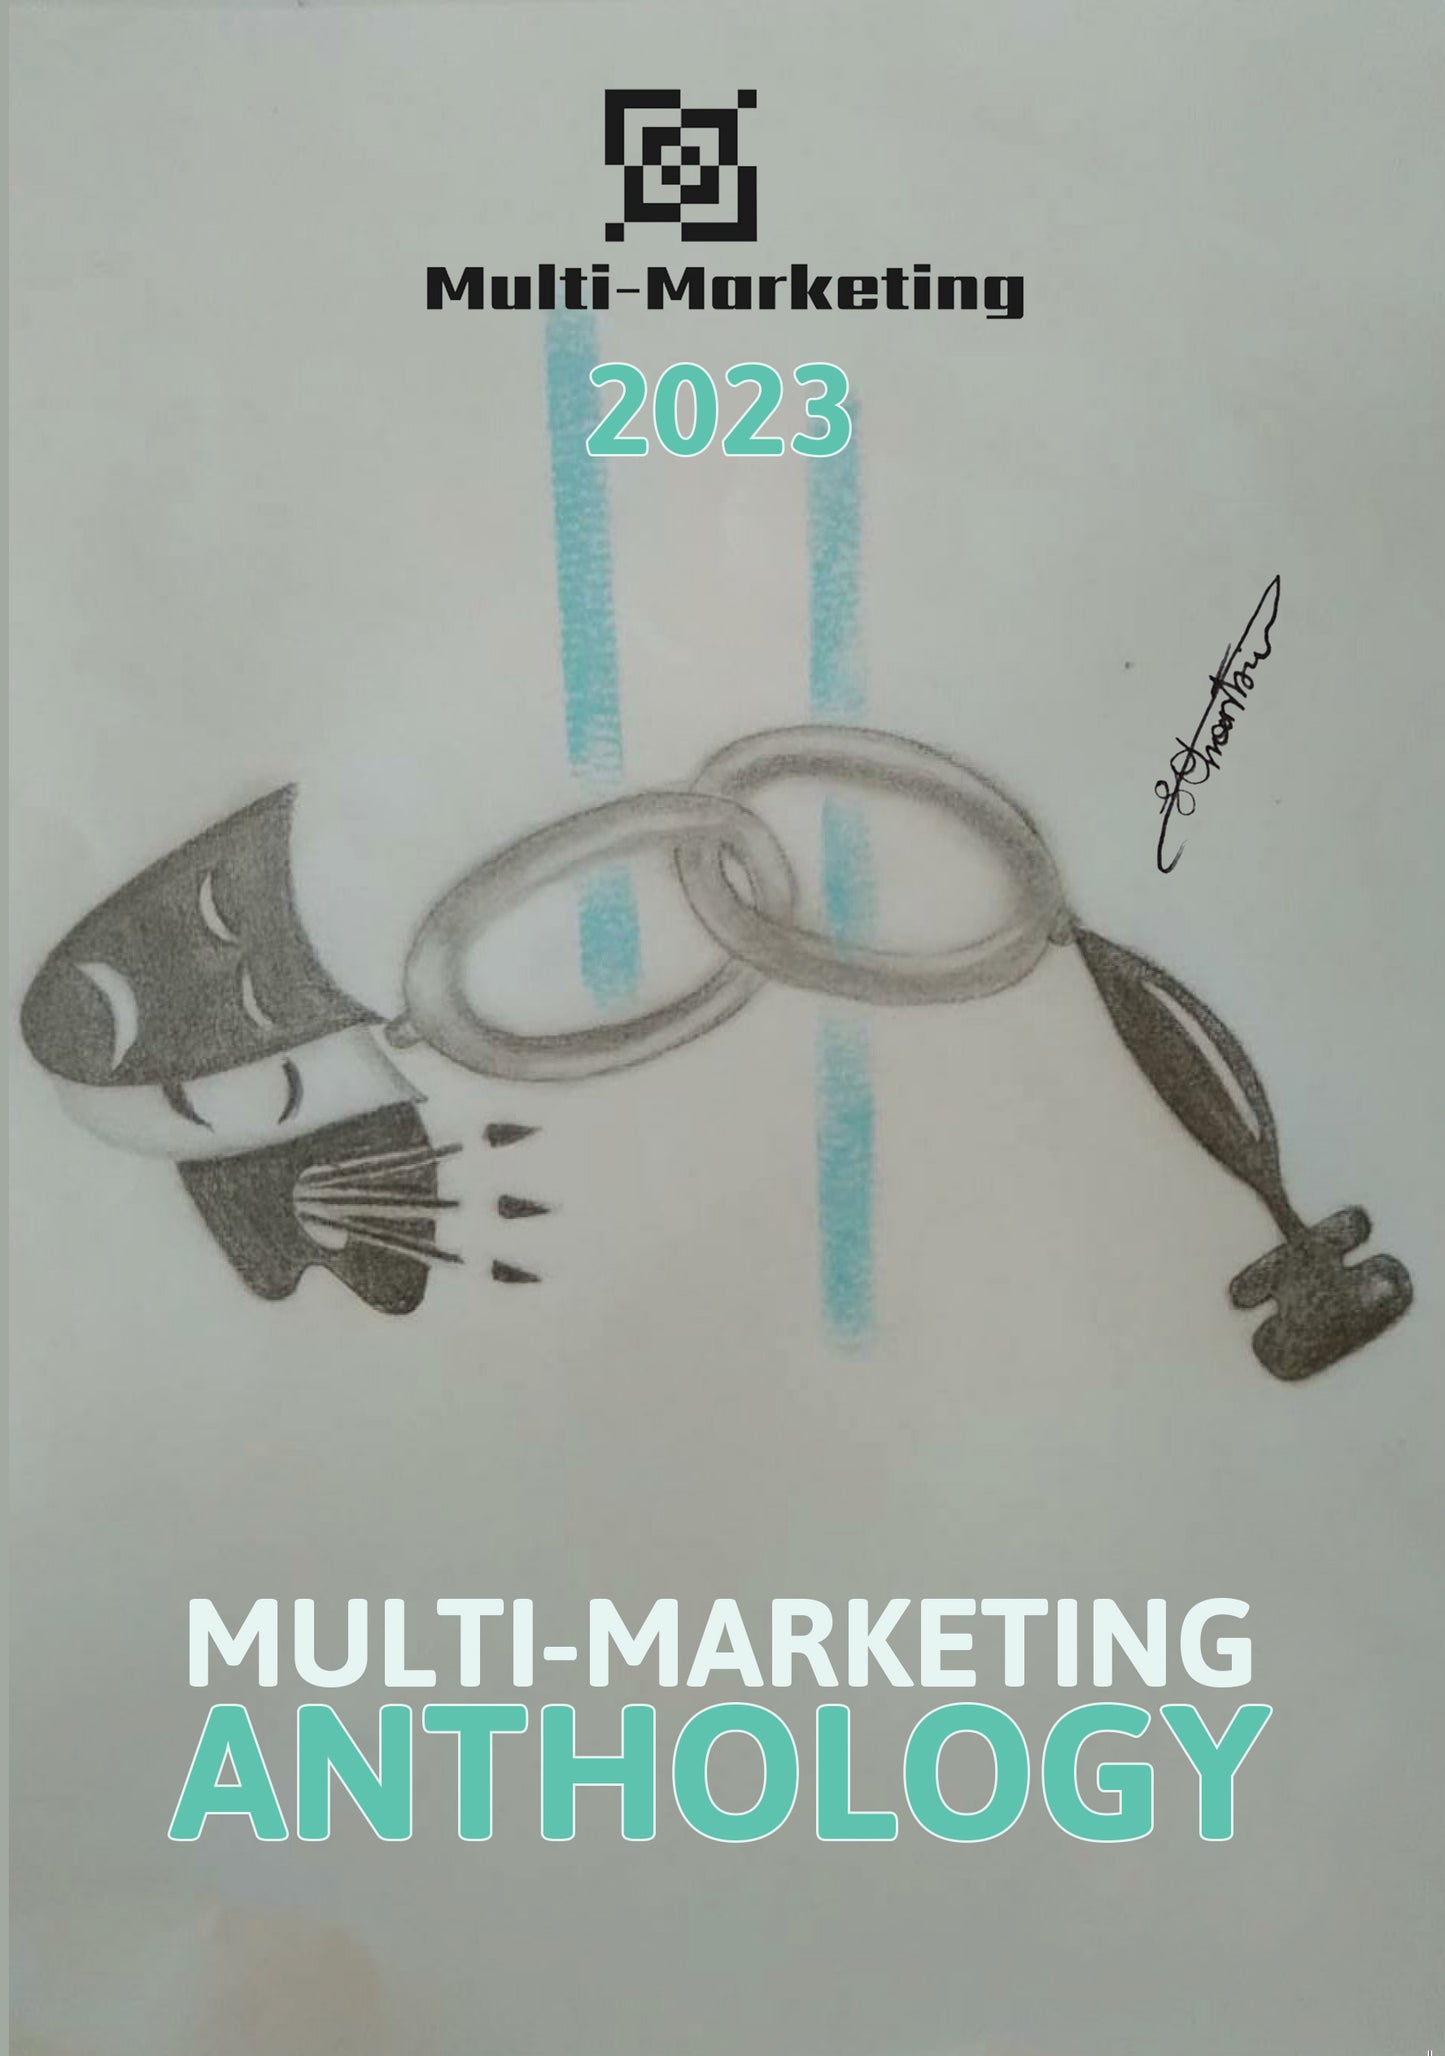 Multi-Marketing Anthology 2023